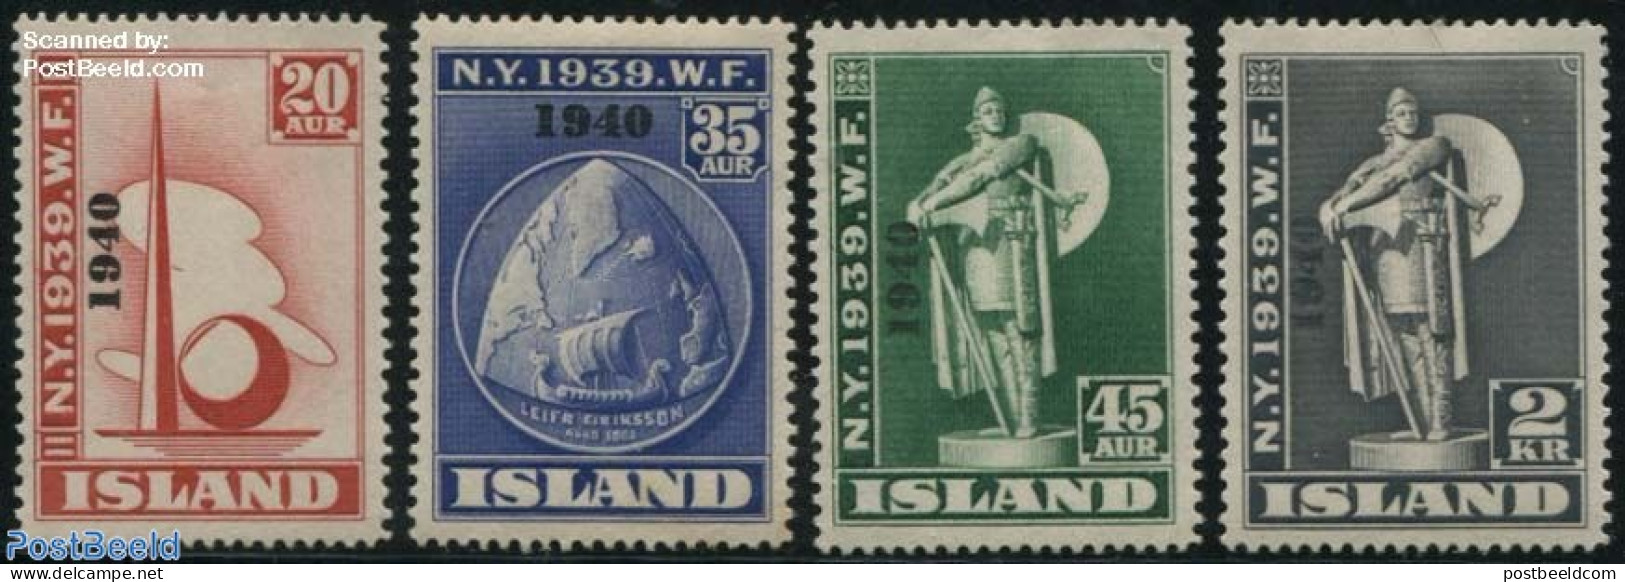 Iceland 1940 Local Overprints 4v, Unused (hinged) - Unused Stamps